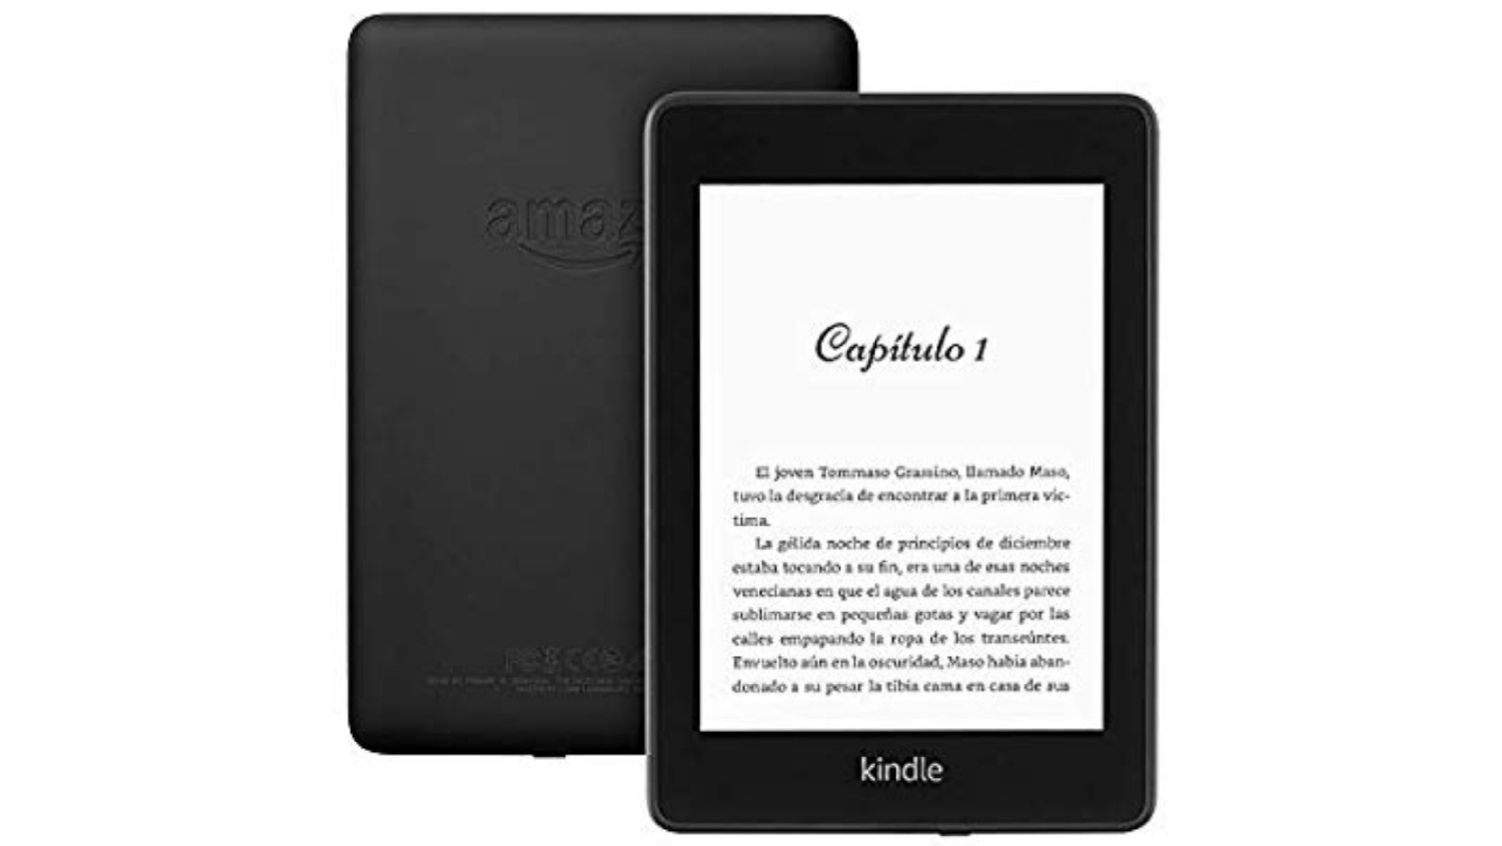 Kindle Paperwhite 32GB rebajado + 3 meses gratis de Kindle Unlimited (nuevos usuarios)